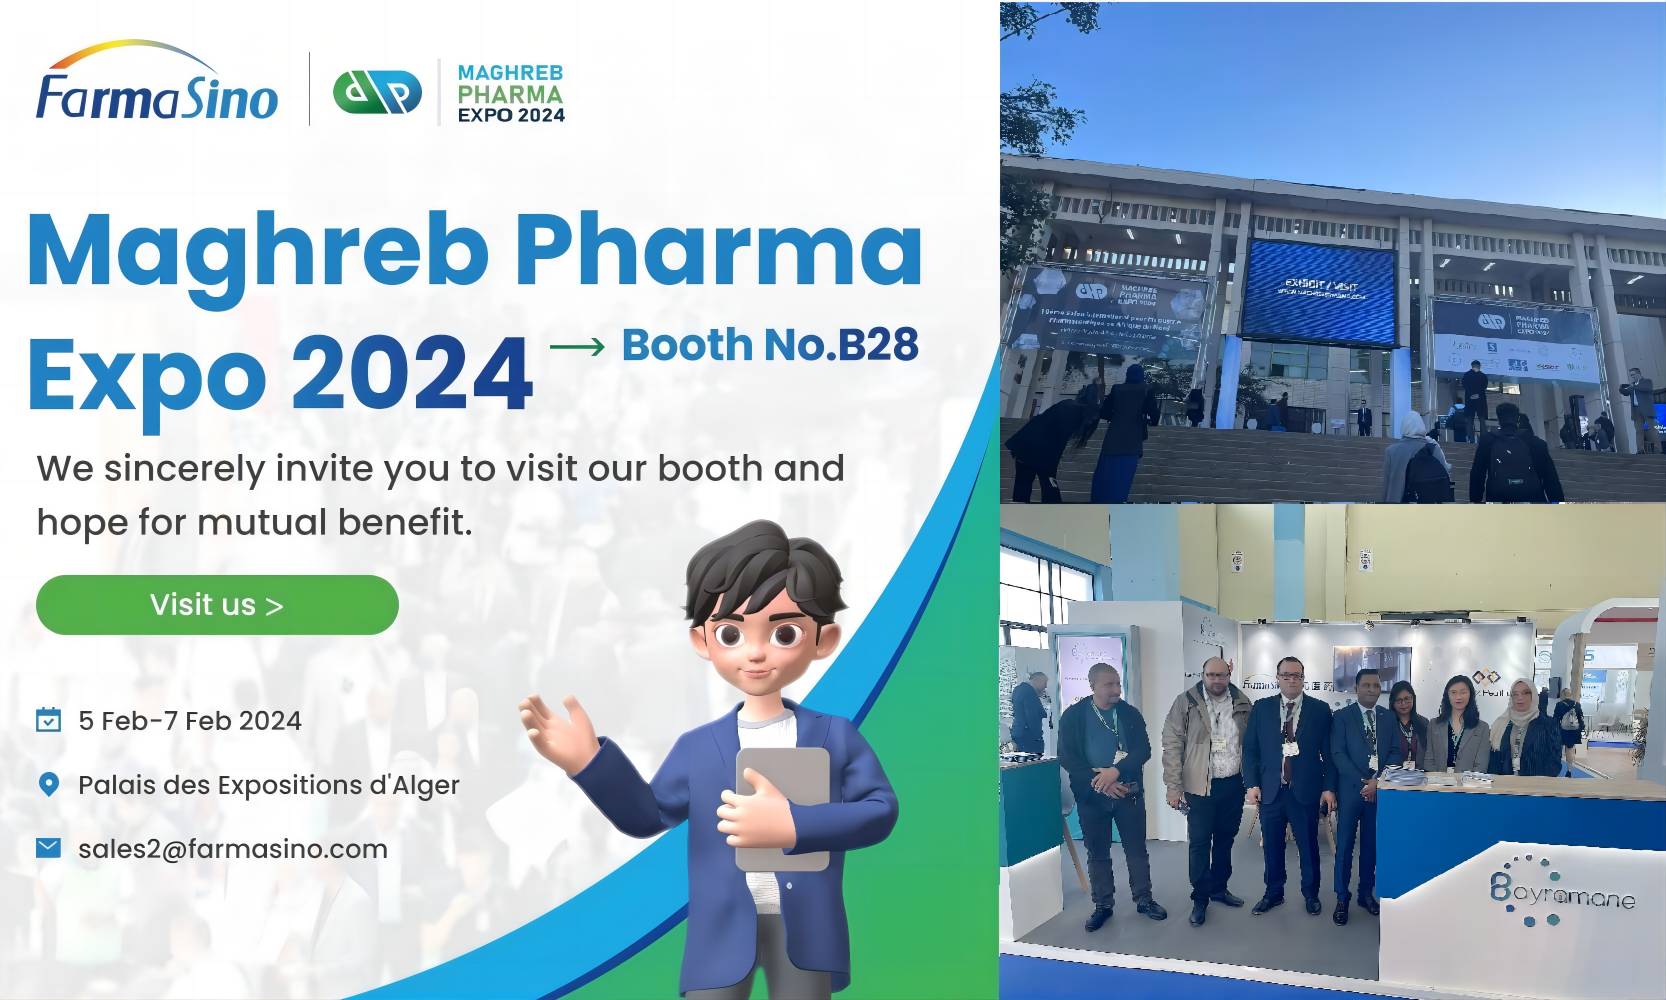 Magreb Pharma Expo 2024 Información Express
        